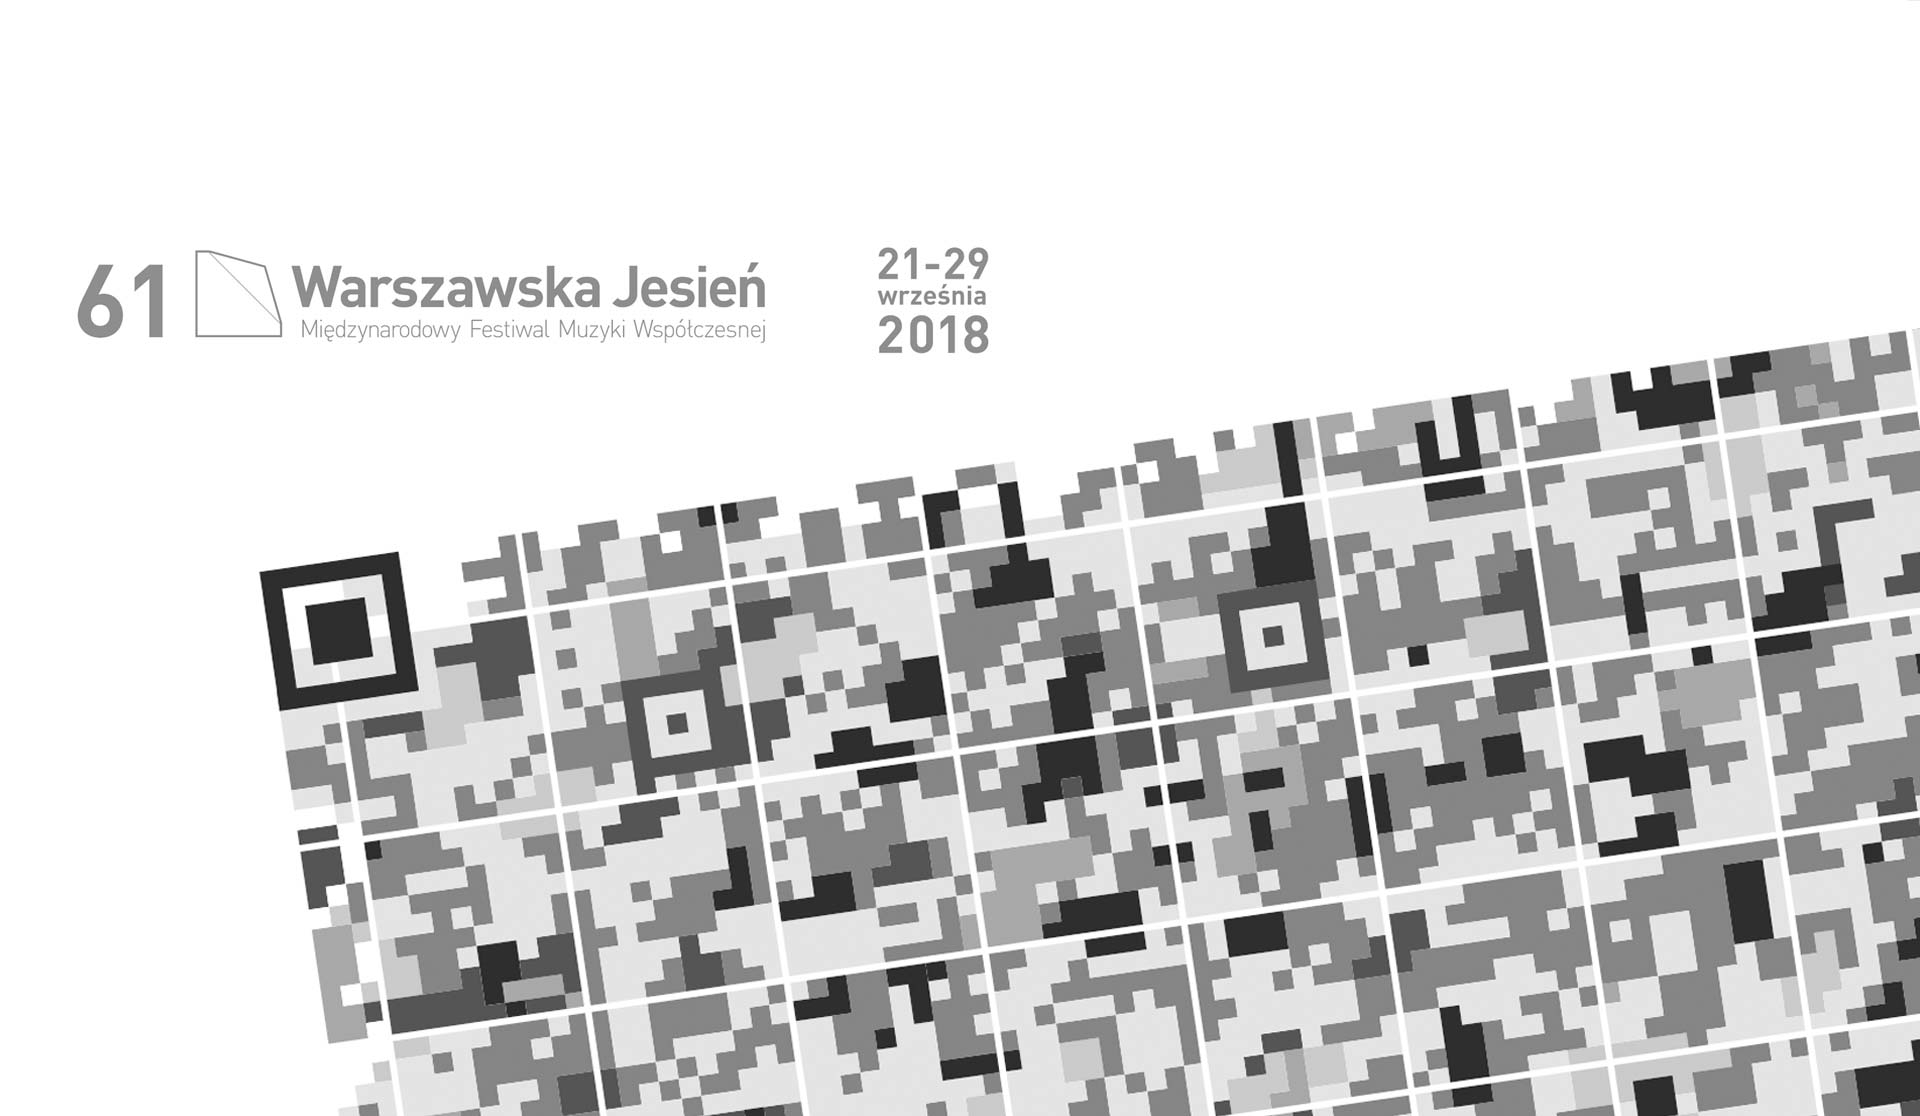 24.09.2018 – Warsaw Autumn, Dark Matter(s)